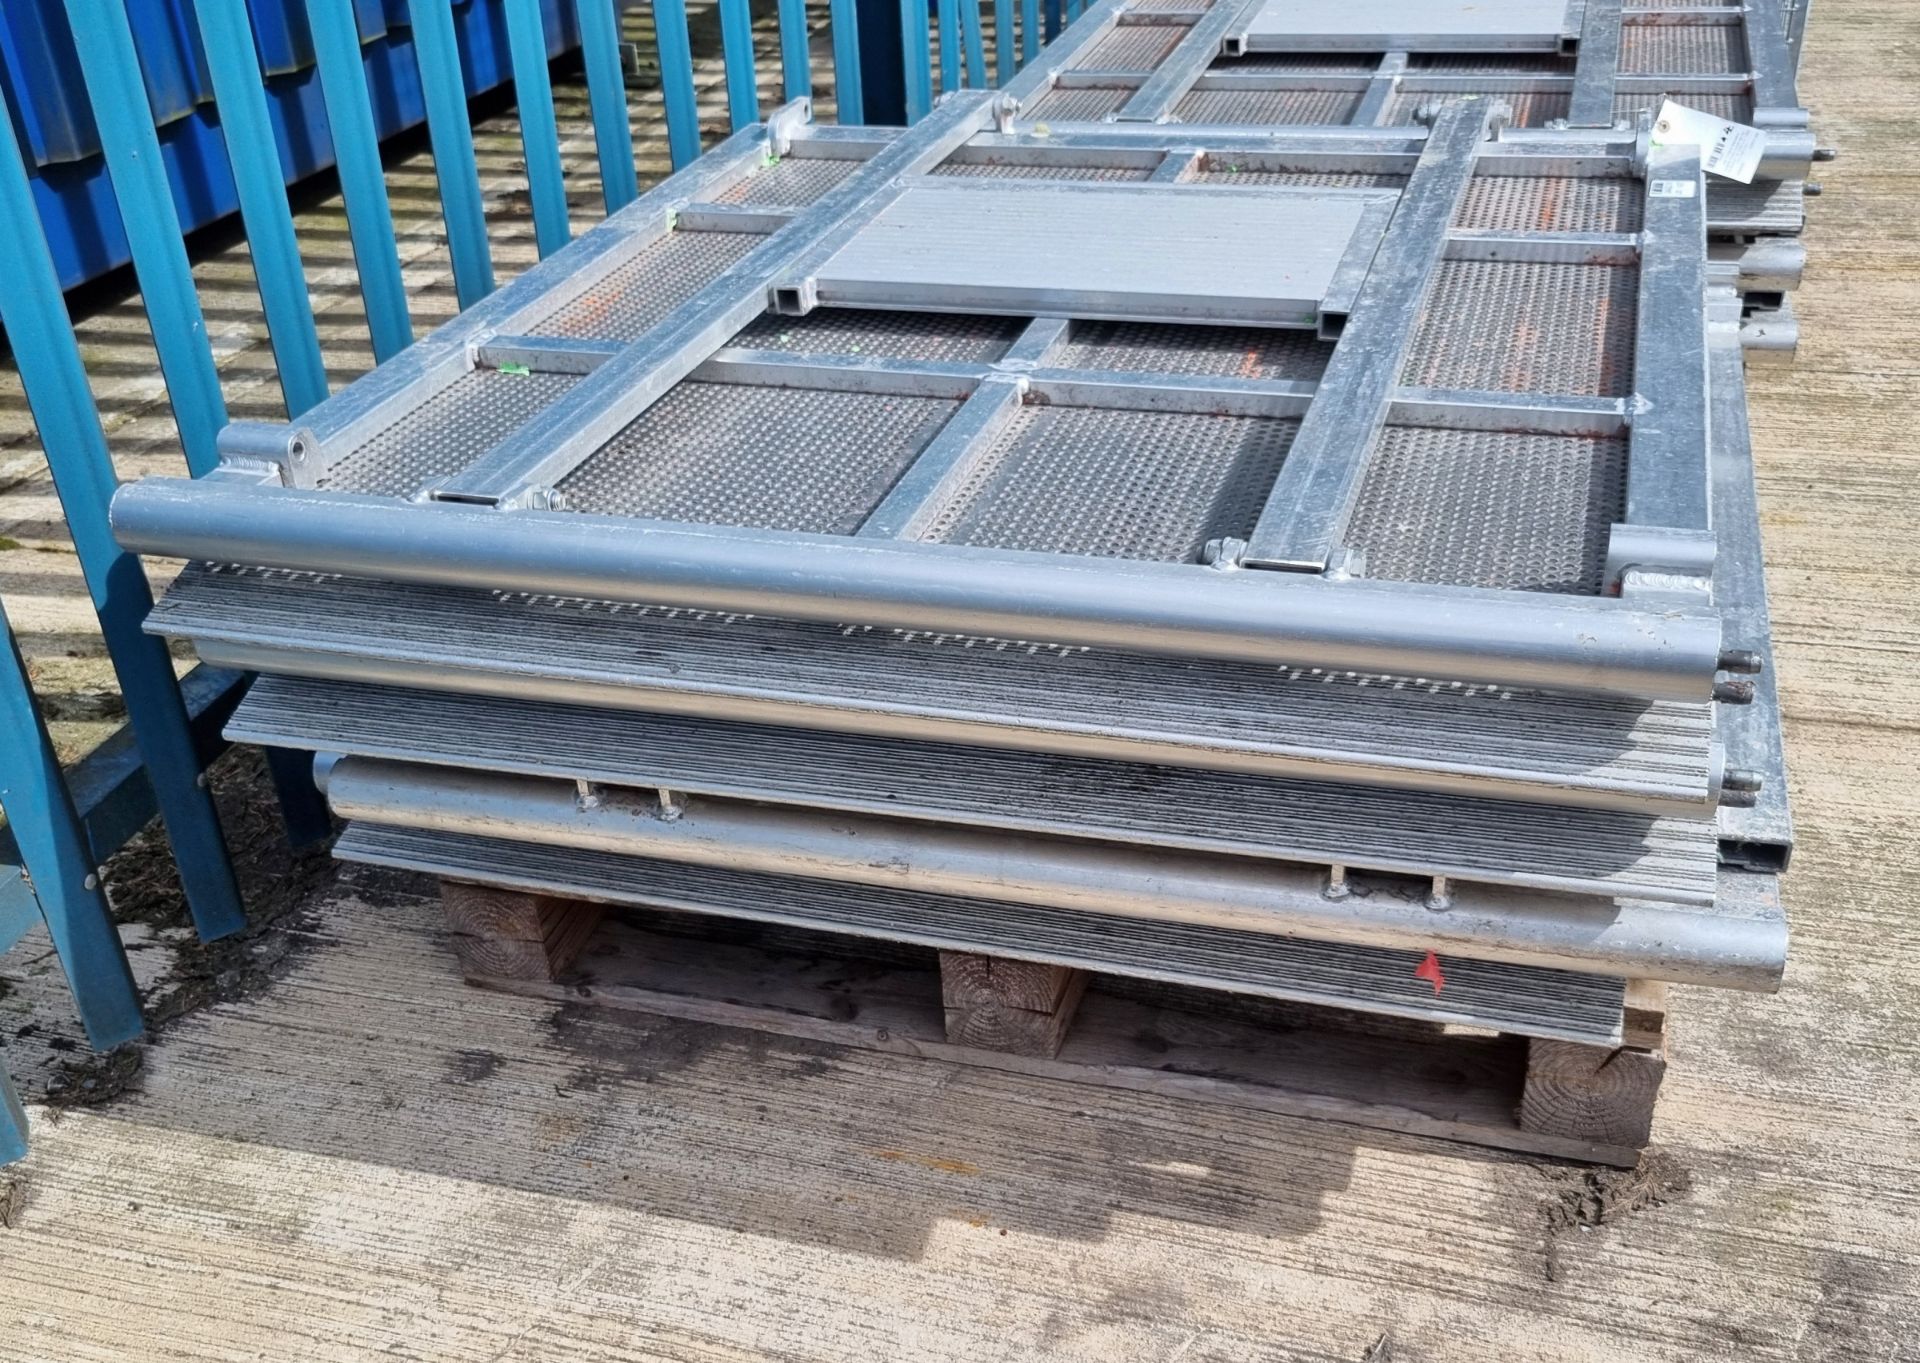 4x Litec CWB-B Standard foldable modul crowd barriers - Aluminium - W 1035 x D 1250 x H 1185 mm - Image 3 of 3